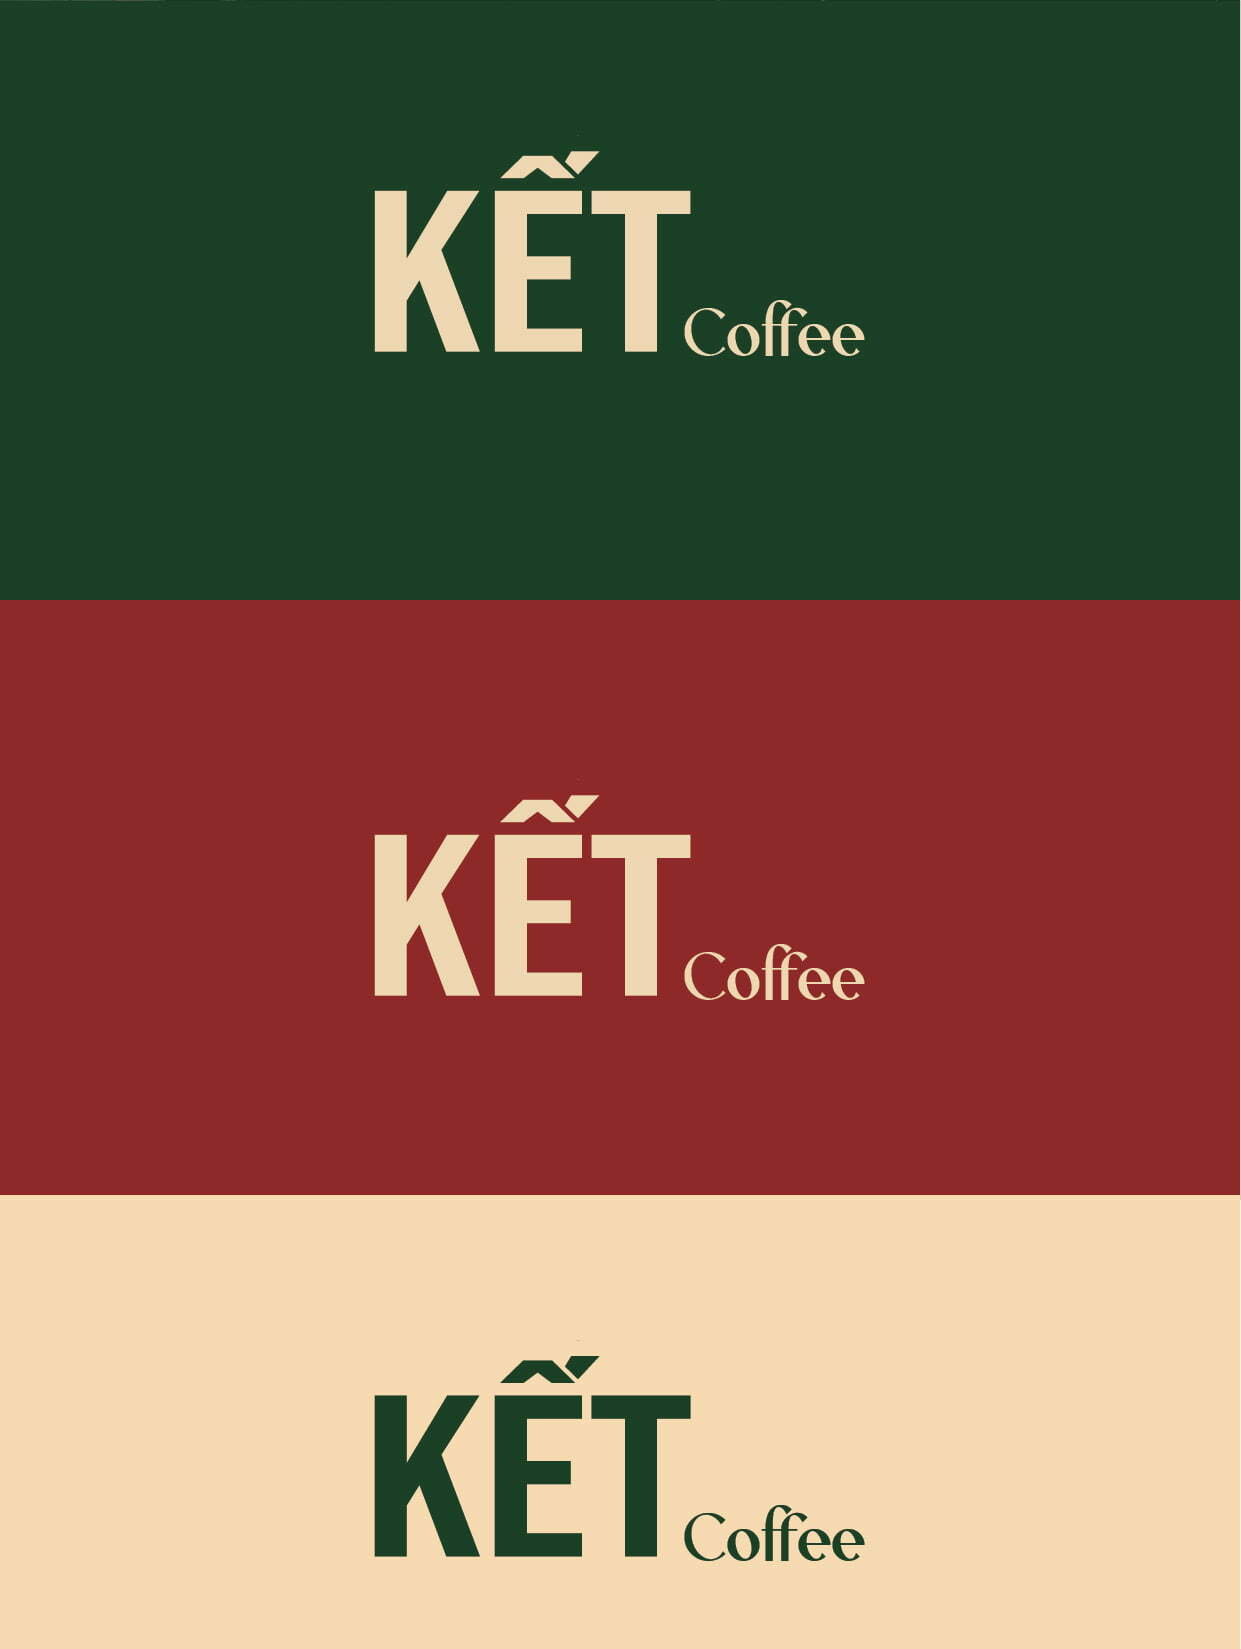 Idea Ket coffee OP1 01